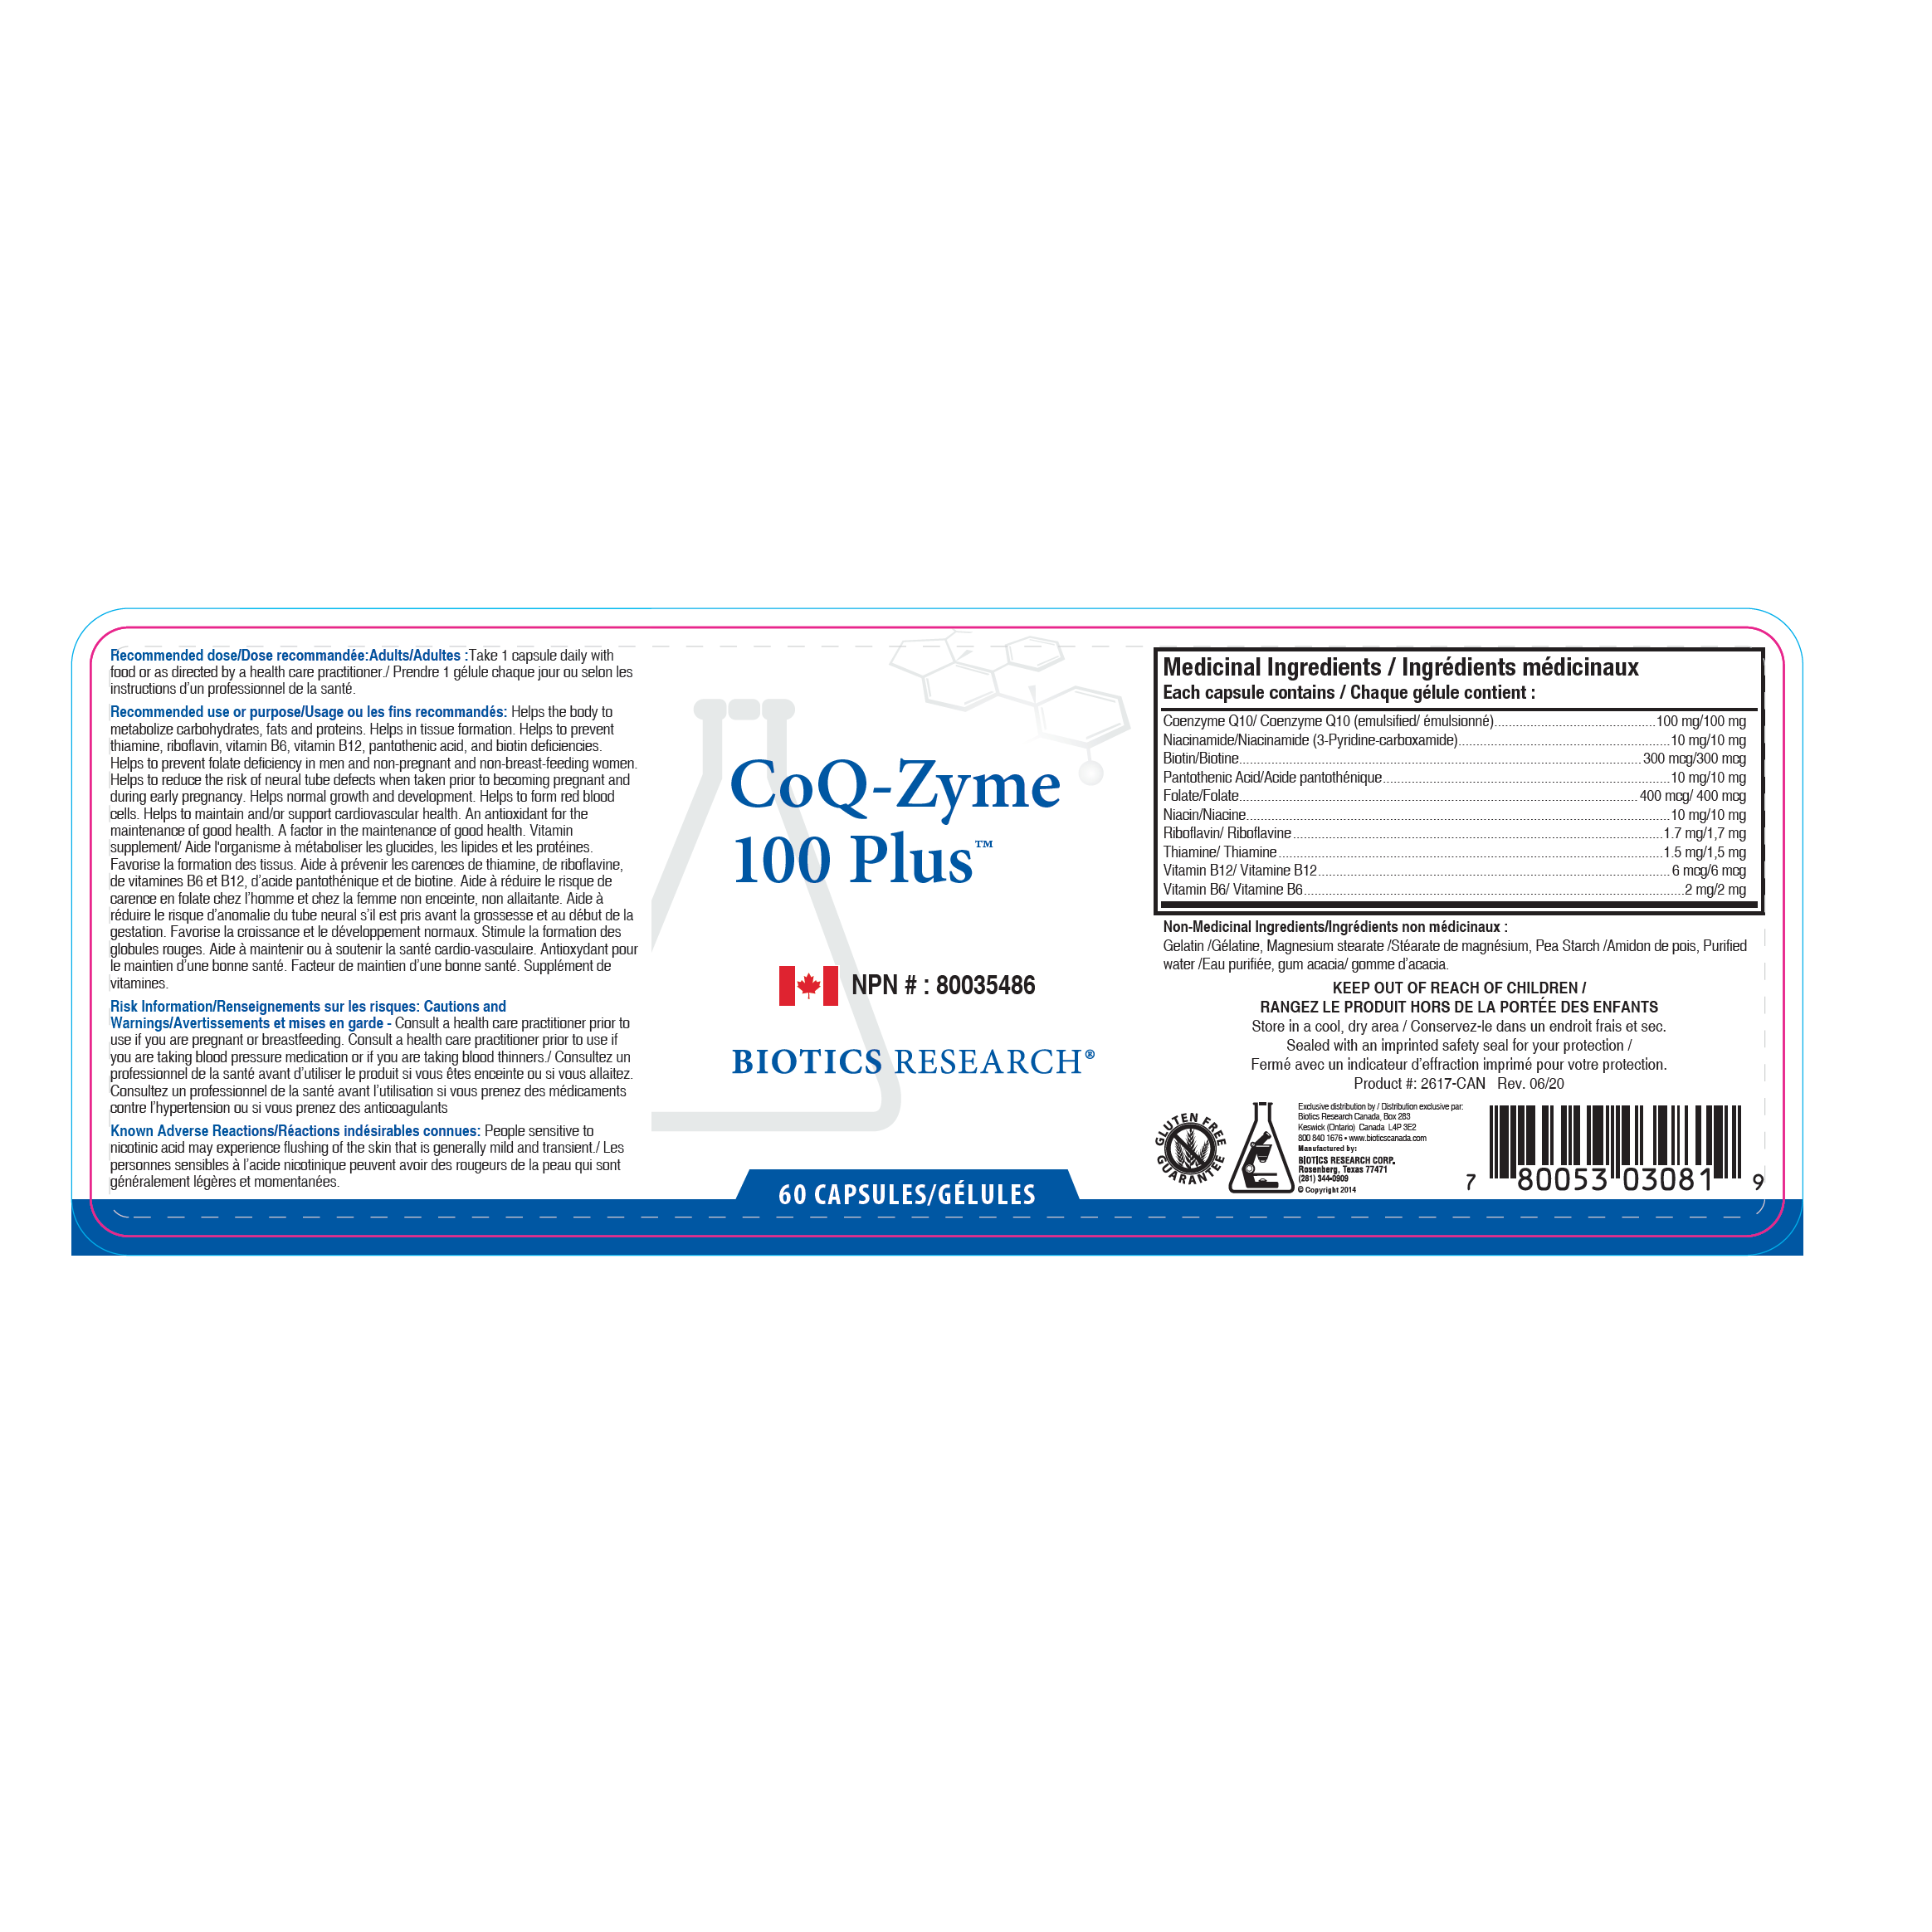 CoQ-Zyme 100 Plus (100 mg)